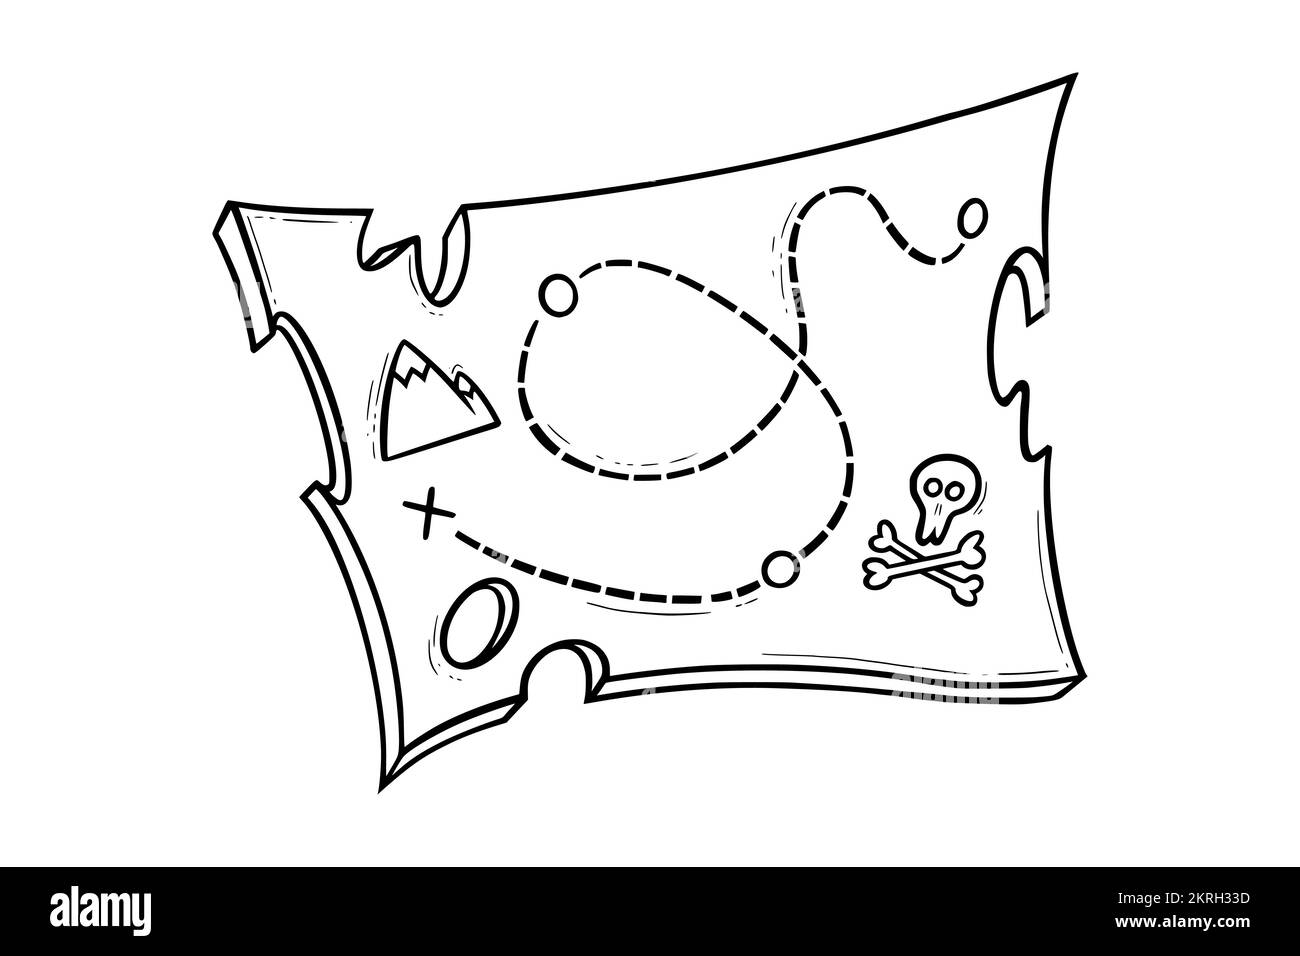 Carte de la tresure des pirates. Croquis de la carte des pirates pour la chasse au Trésor ou la Wanderlust. Illustration vectorielle isolée sur fond blanc Illustration de Vecteur